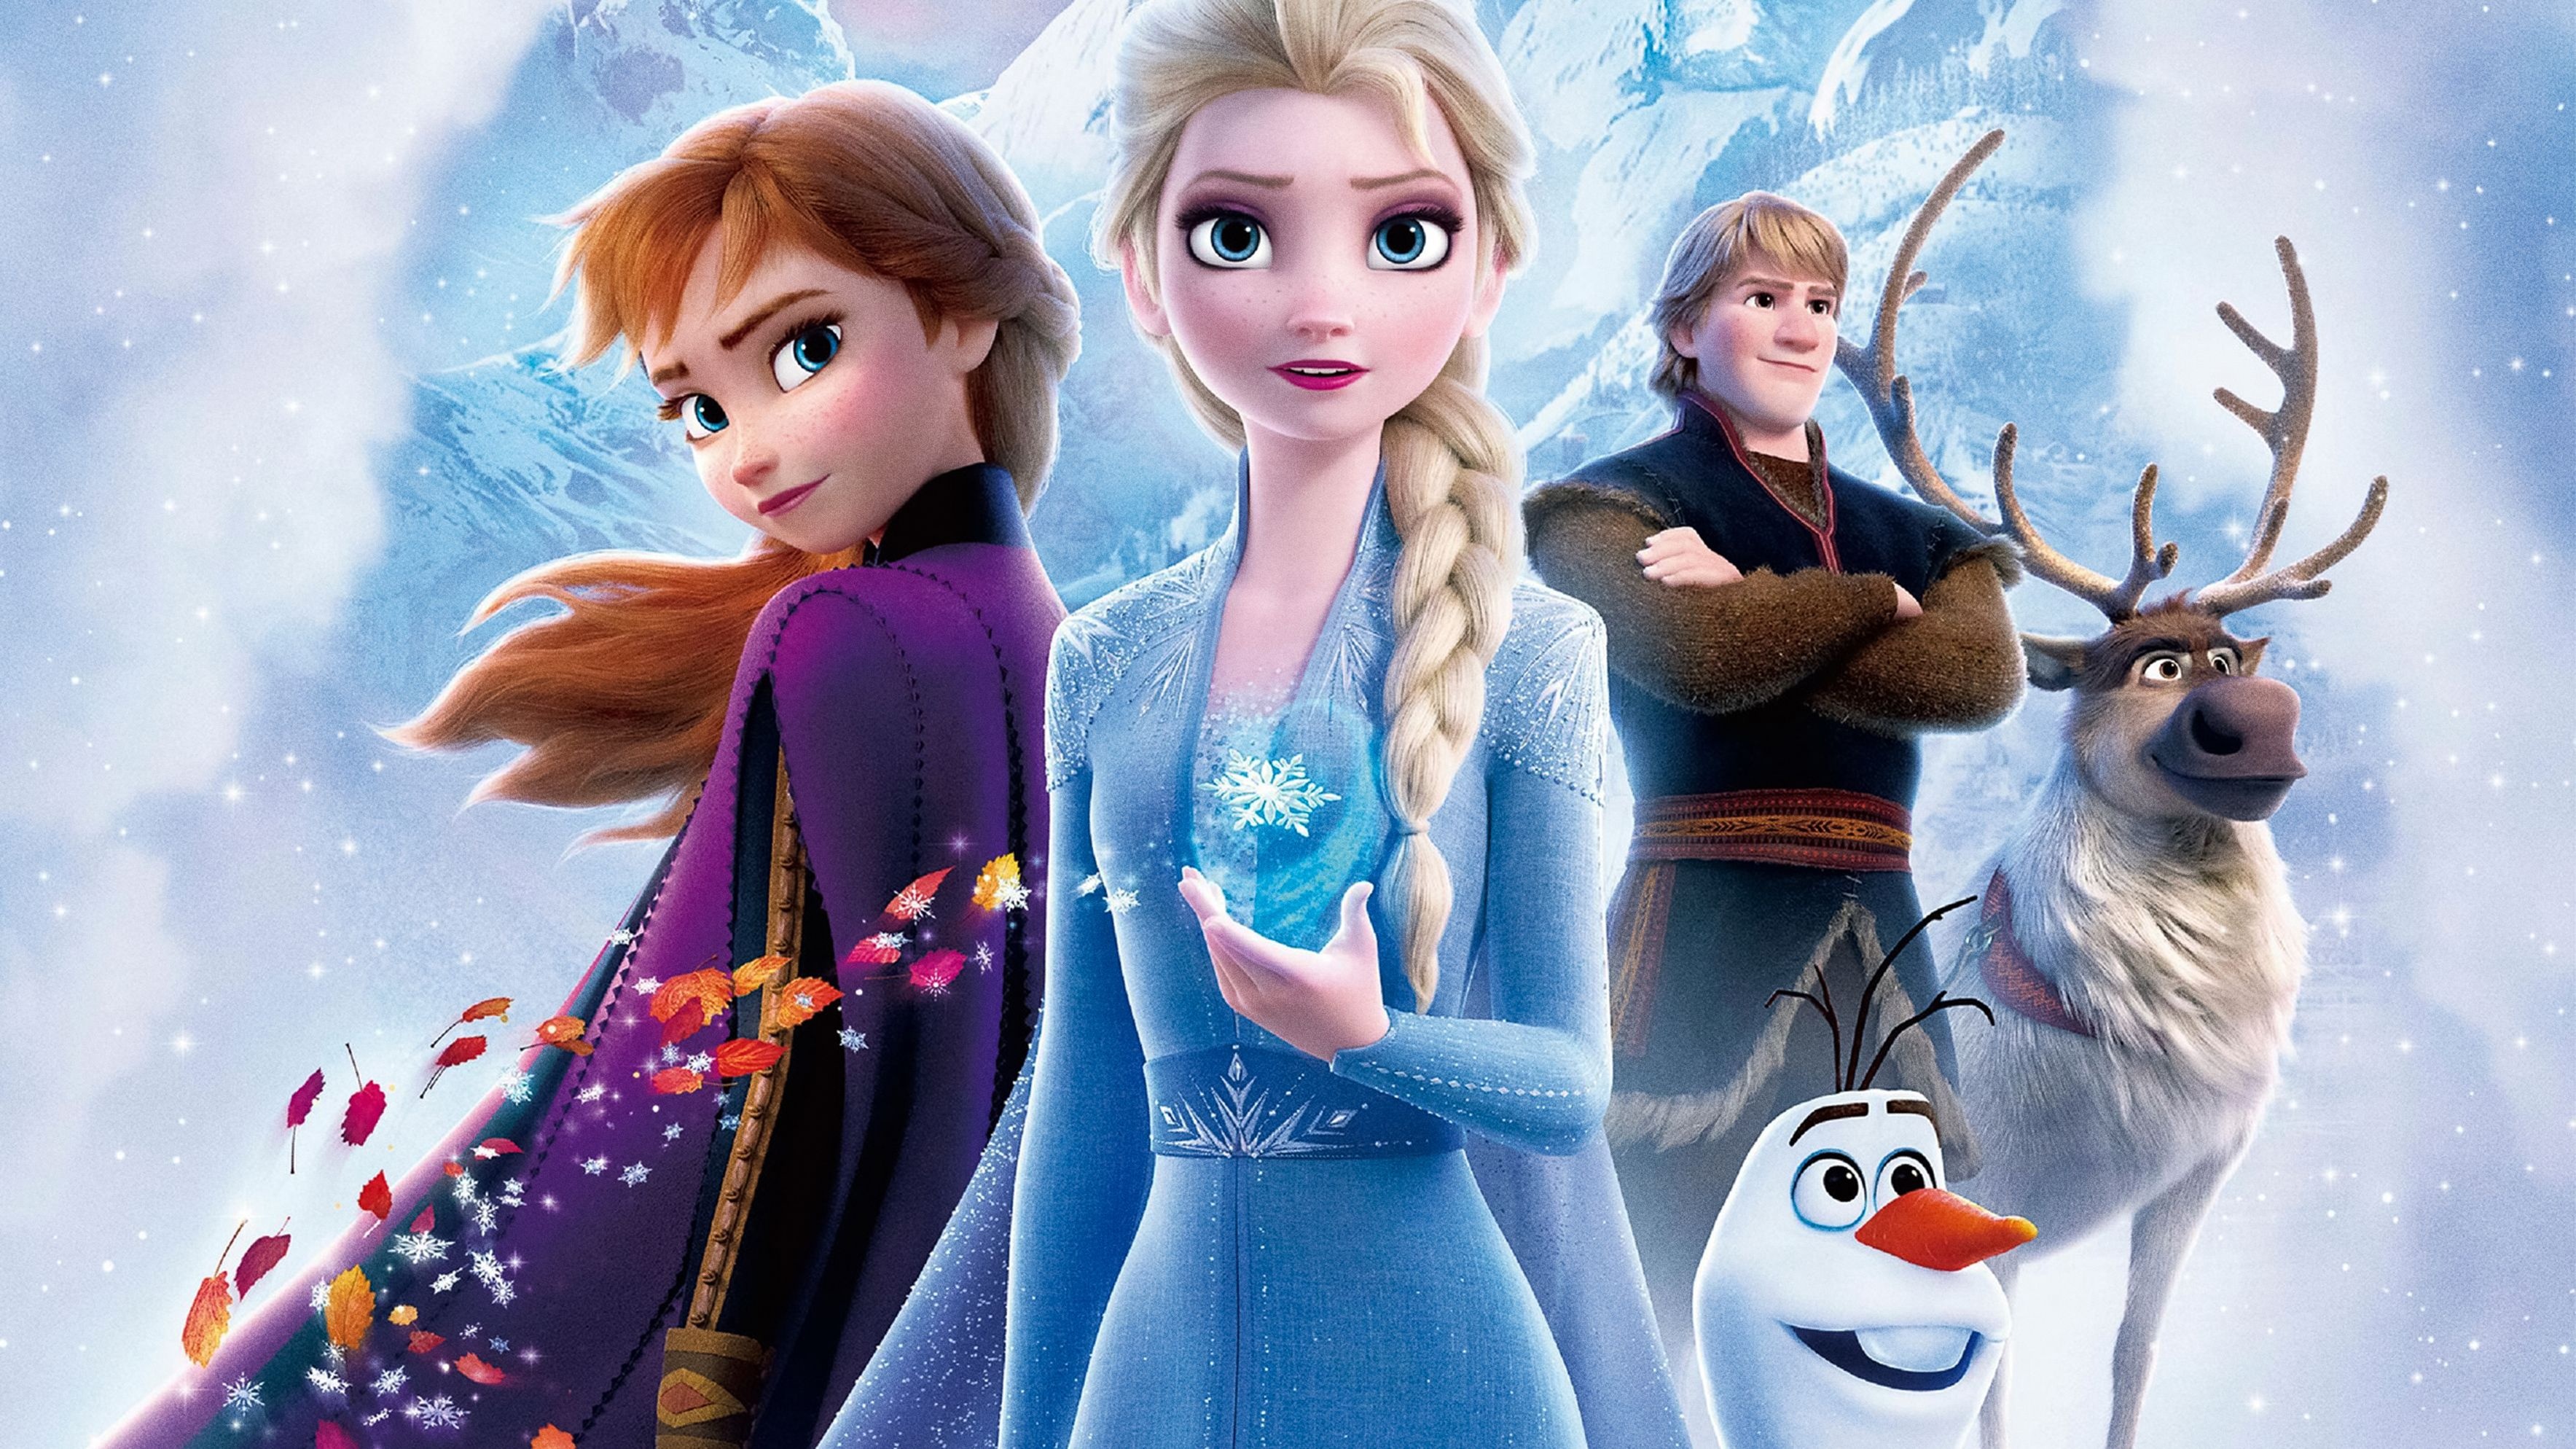 Kristoff, Frozen Animation, Frozen 2 wallpapers, Disney, 3540x1990 HD Desktop